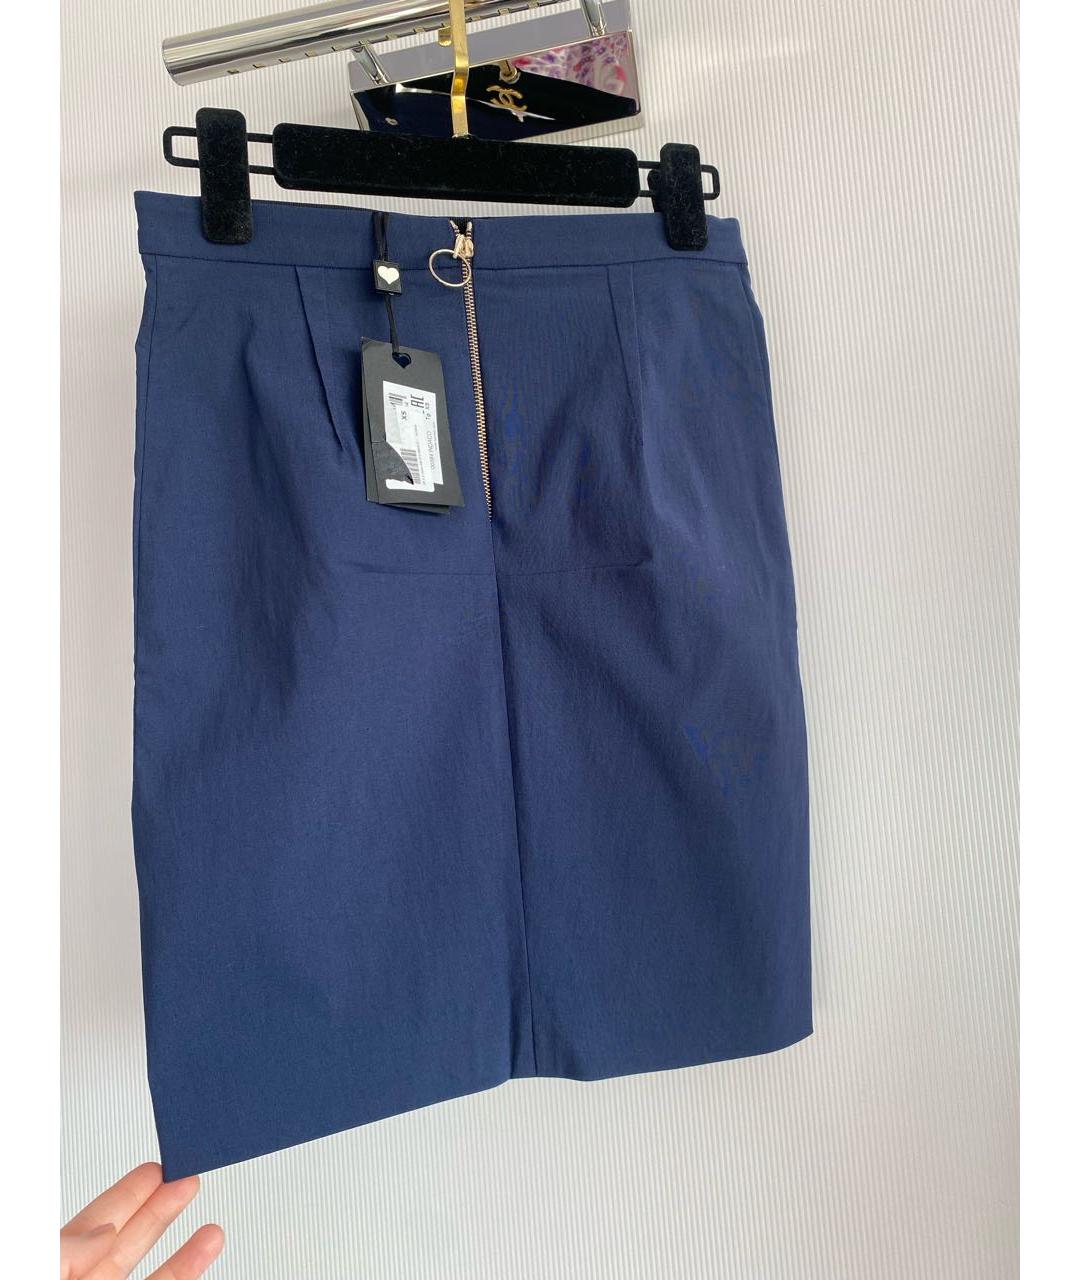 TWIN-SET Темно-синяя вискозная юбка мини, фото 2